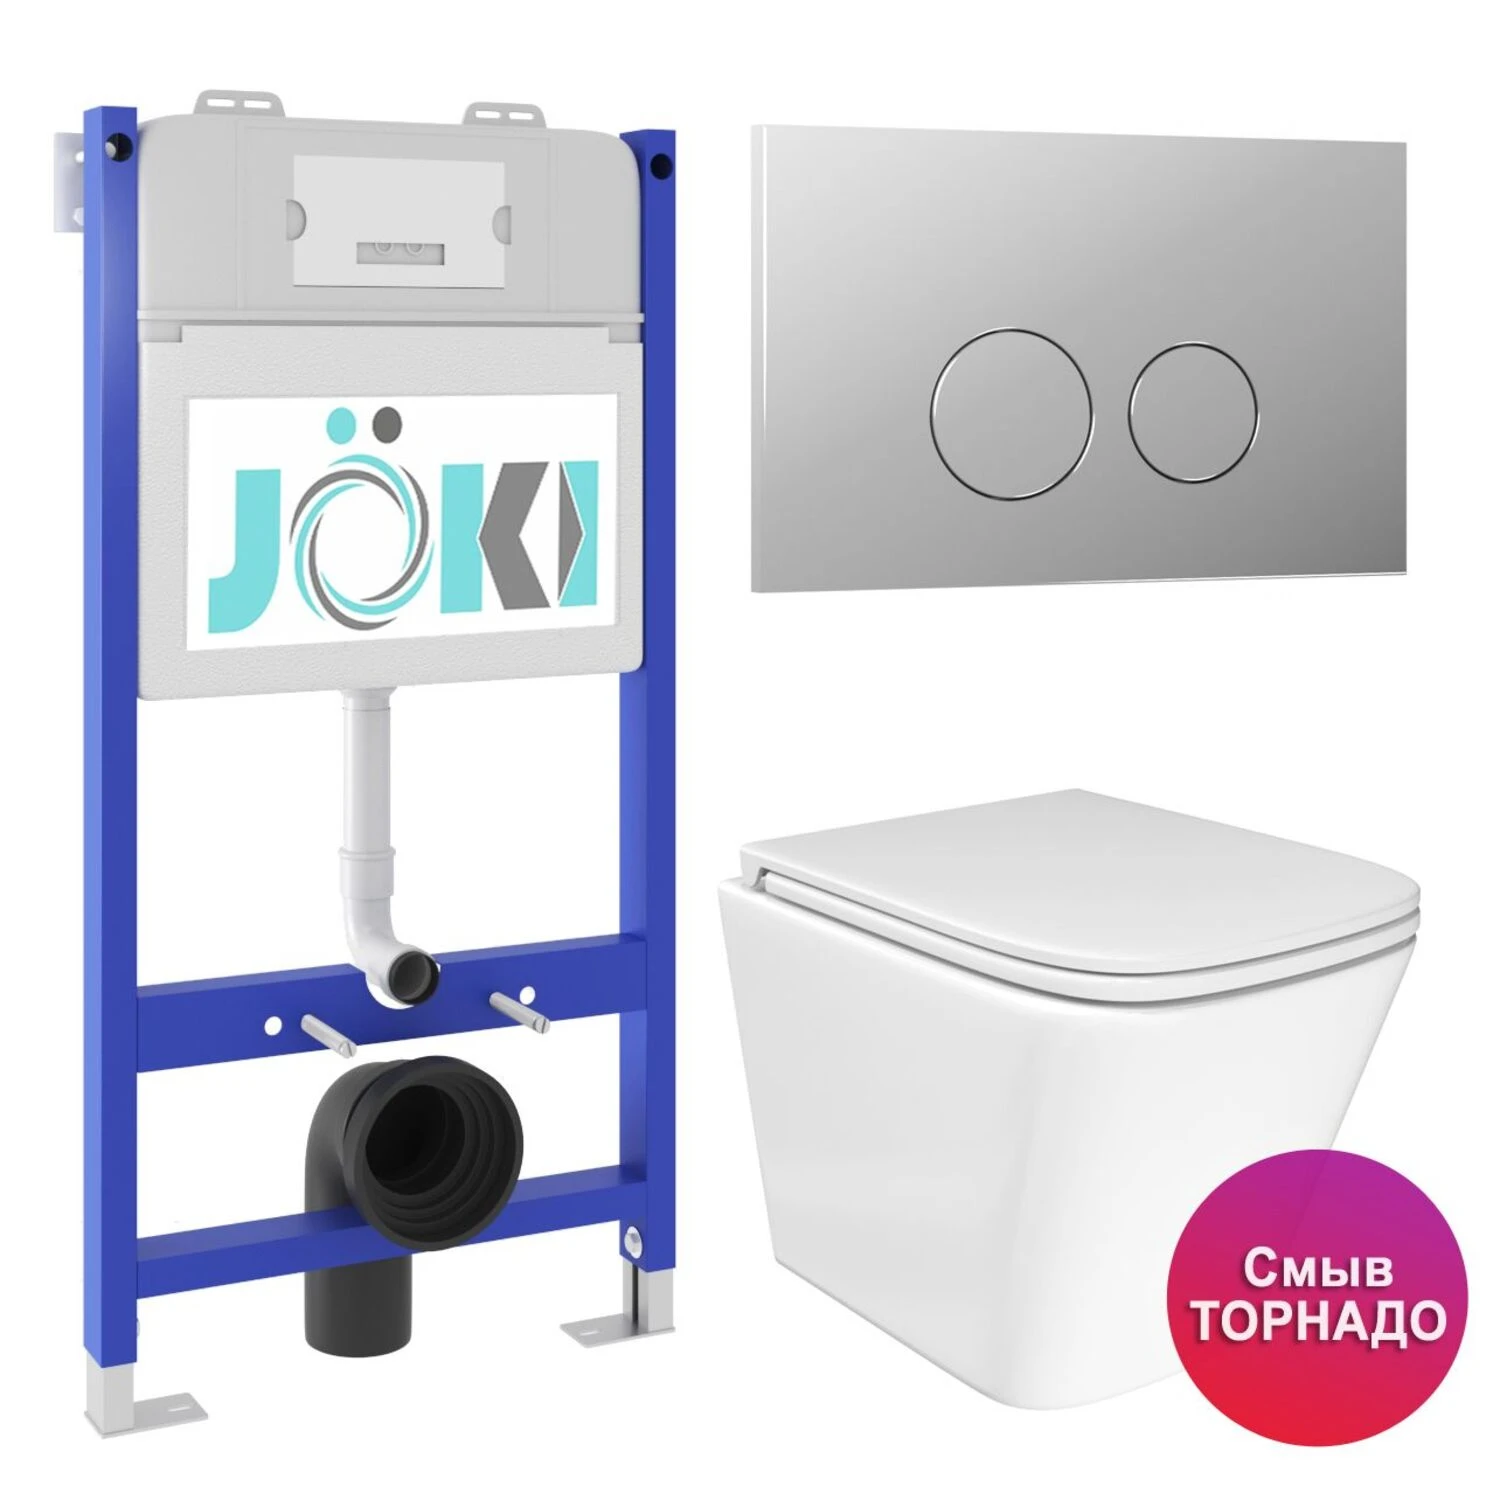 Комплект: JOKI Инсталляция JK03351+Кнопка JK102510CH хром+Verna T JK3031025 унитаз белый, смыв Торнадо